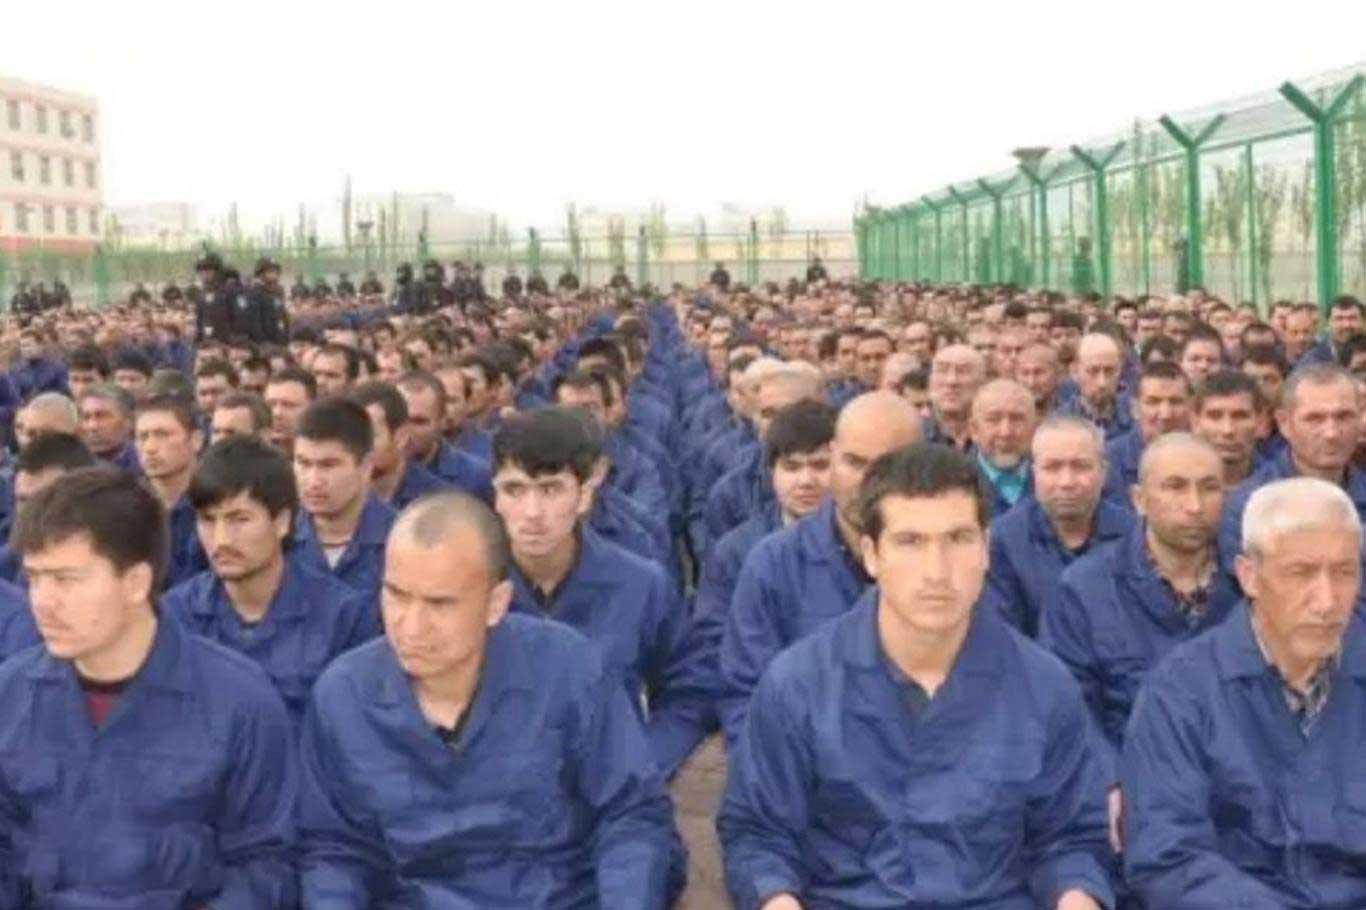 Çin, Uygurlara yönelik insan hakları ihlallerine ilişkin belgeleri yok ediyor